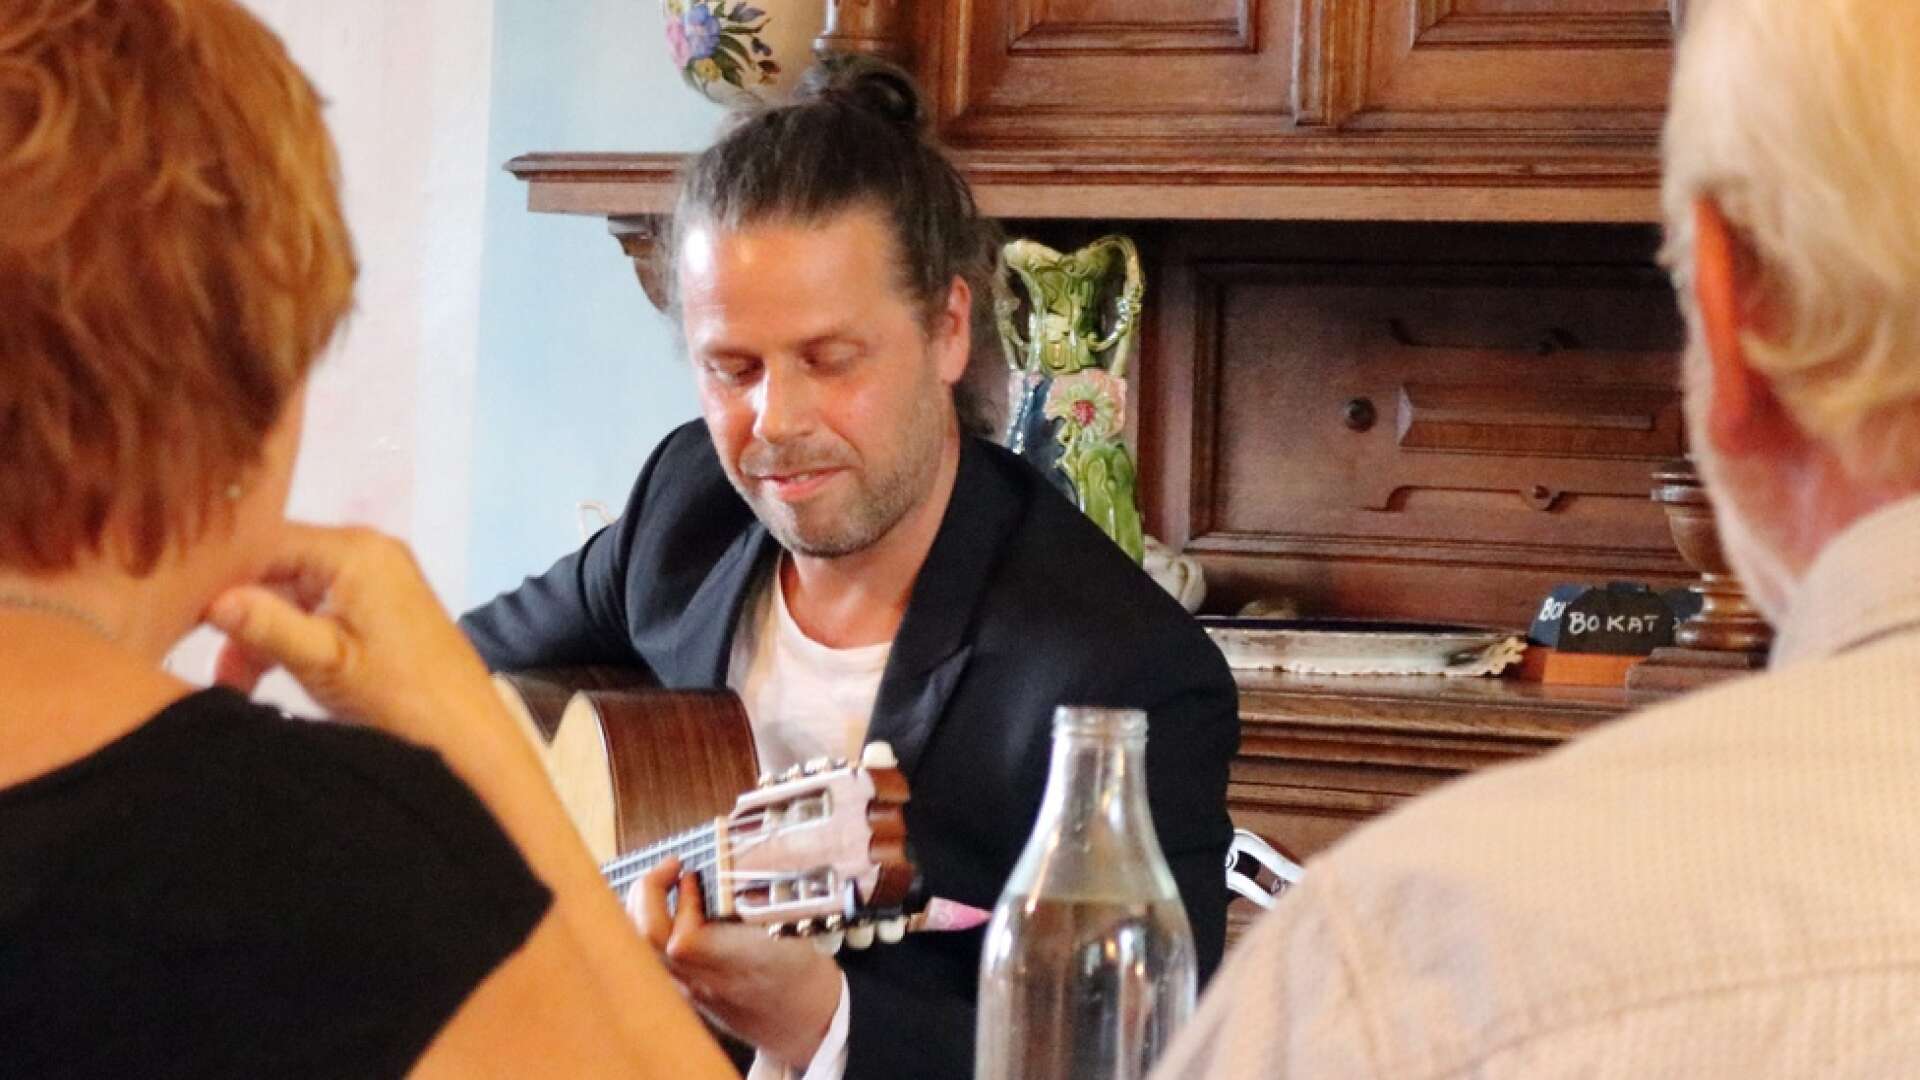 Robert ”Robi” Svärd har tidigare gästat Långbans gästgiveri. Den 20 augusti är det dags igen för artisten och hans rytmiska flamencomusik. Det är som vanligt Spansk-svenska kulturbron som arrangerar.